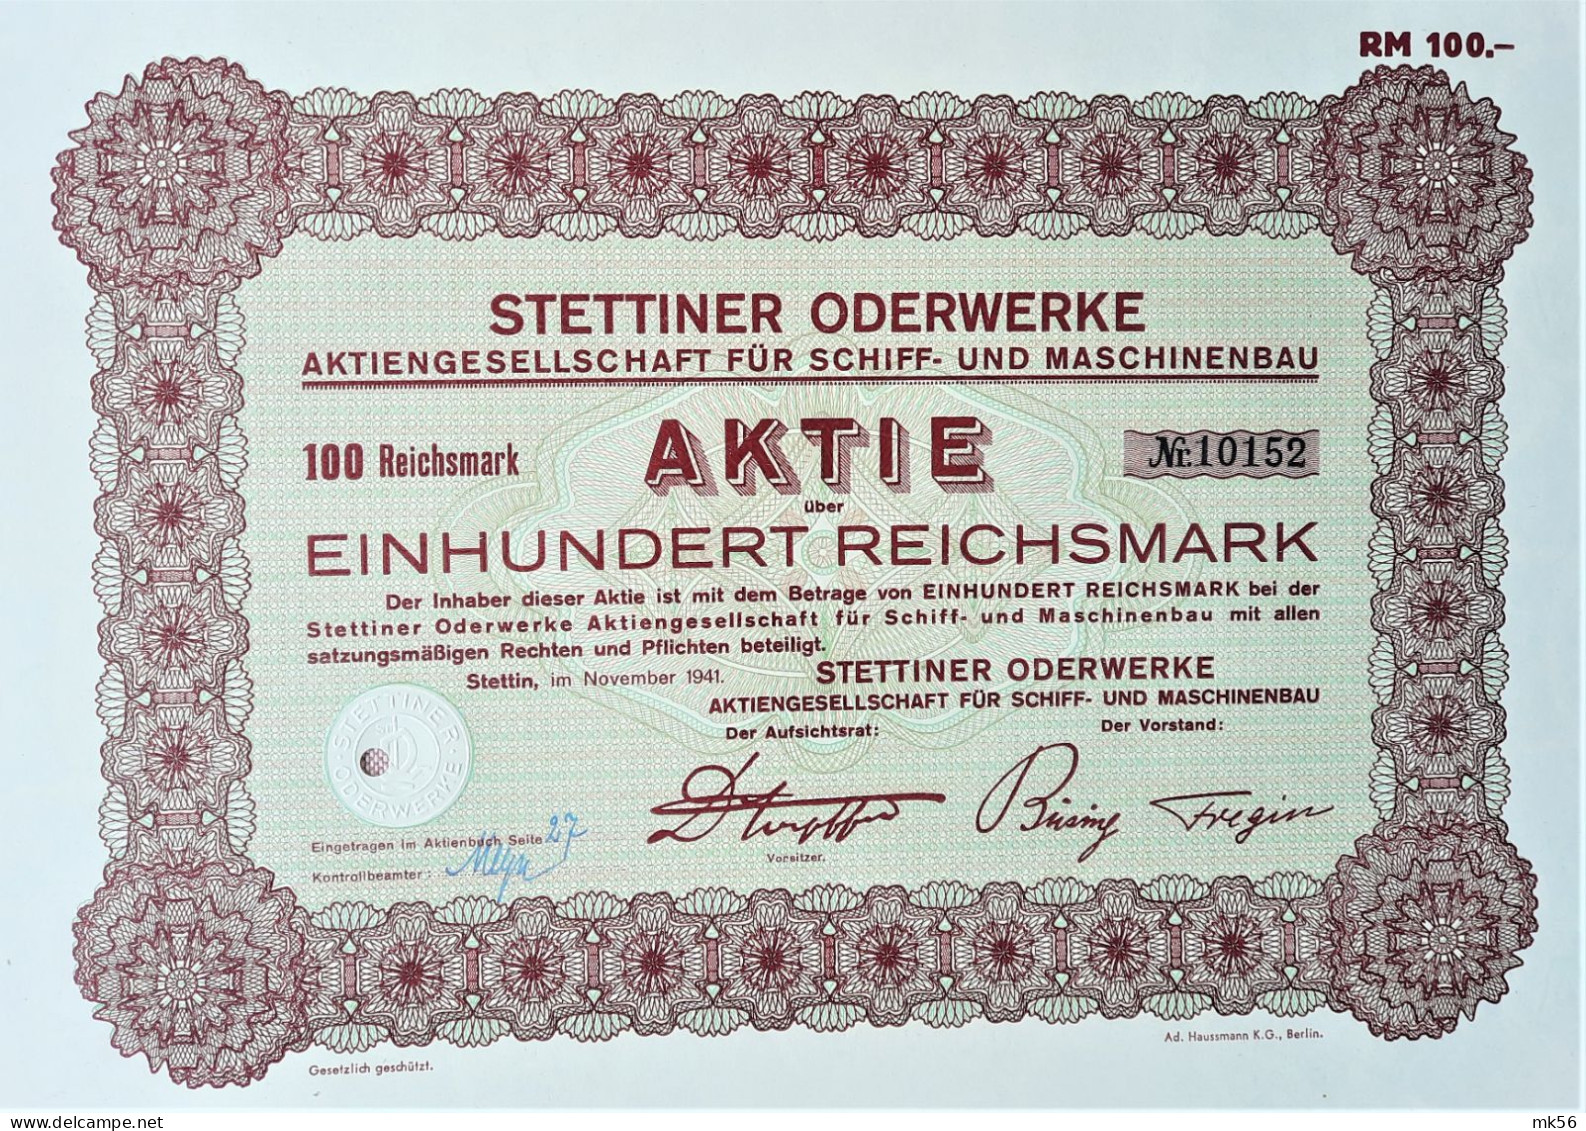 Stettiner Oderwerke - A.G. Für Schiff- Und Maschinenbau - Stettin - 1941 - Industrial